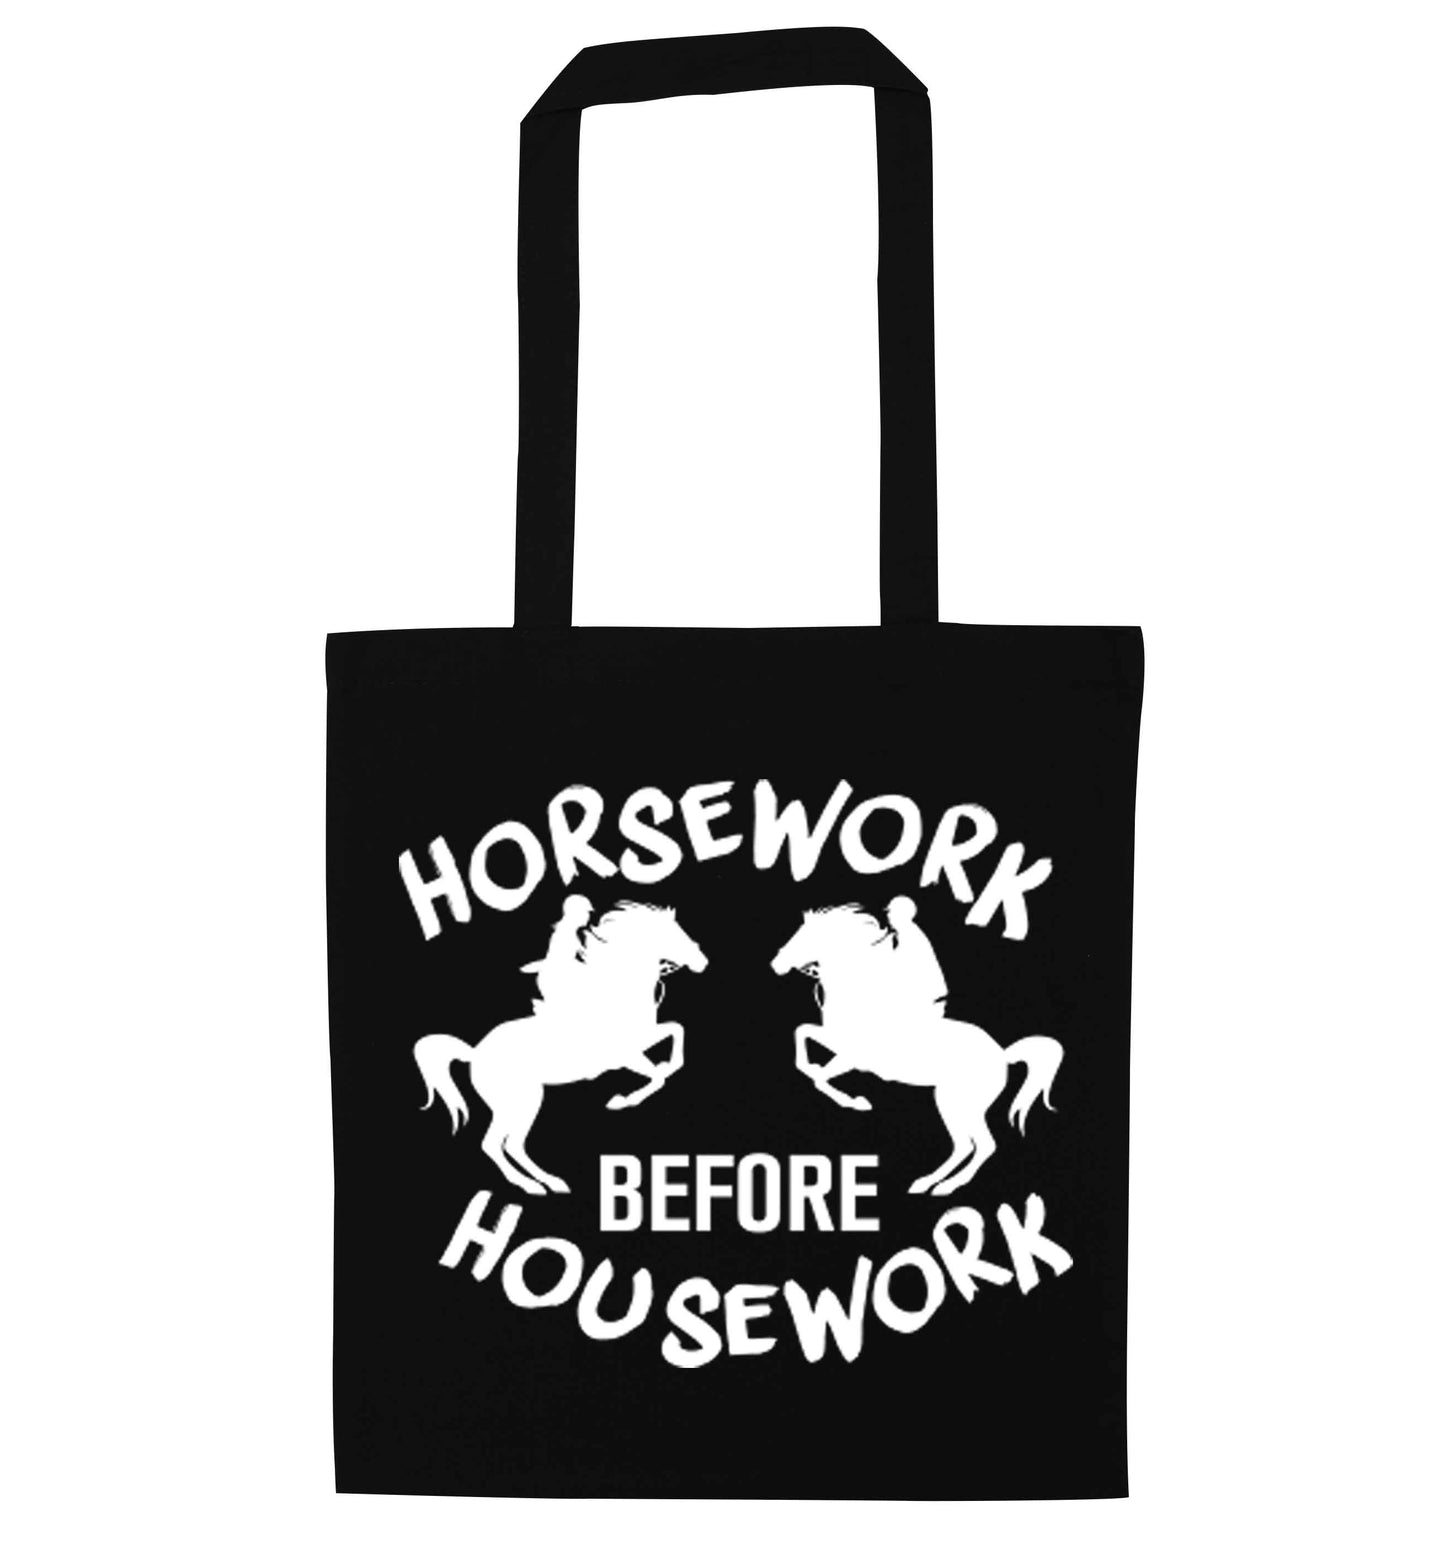 Horsework before housework black tote bag